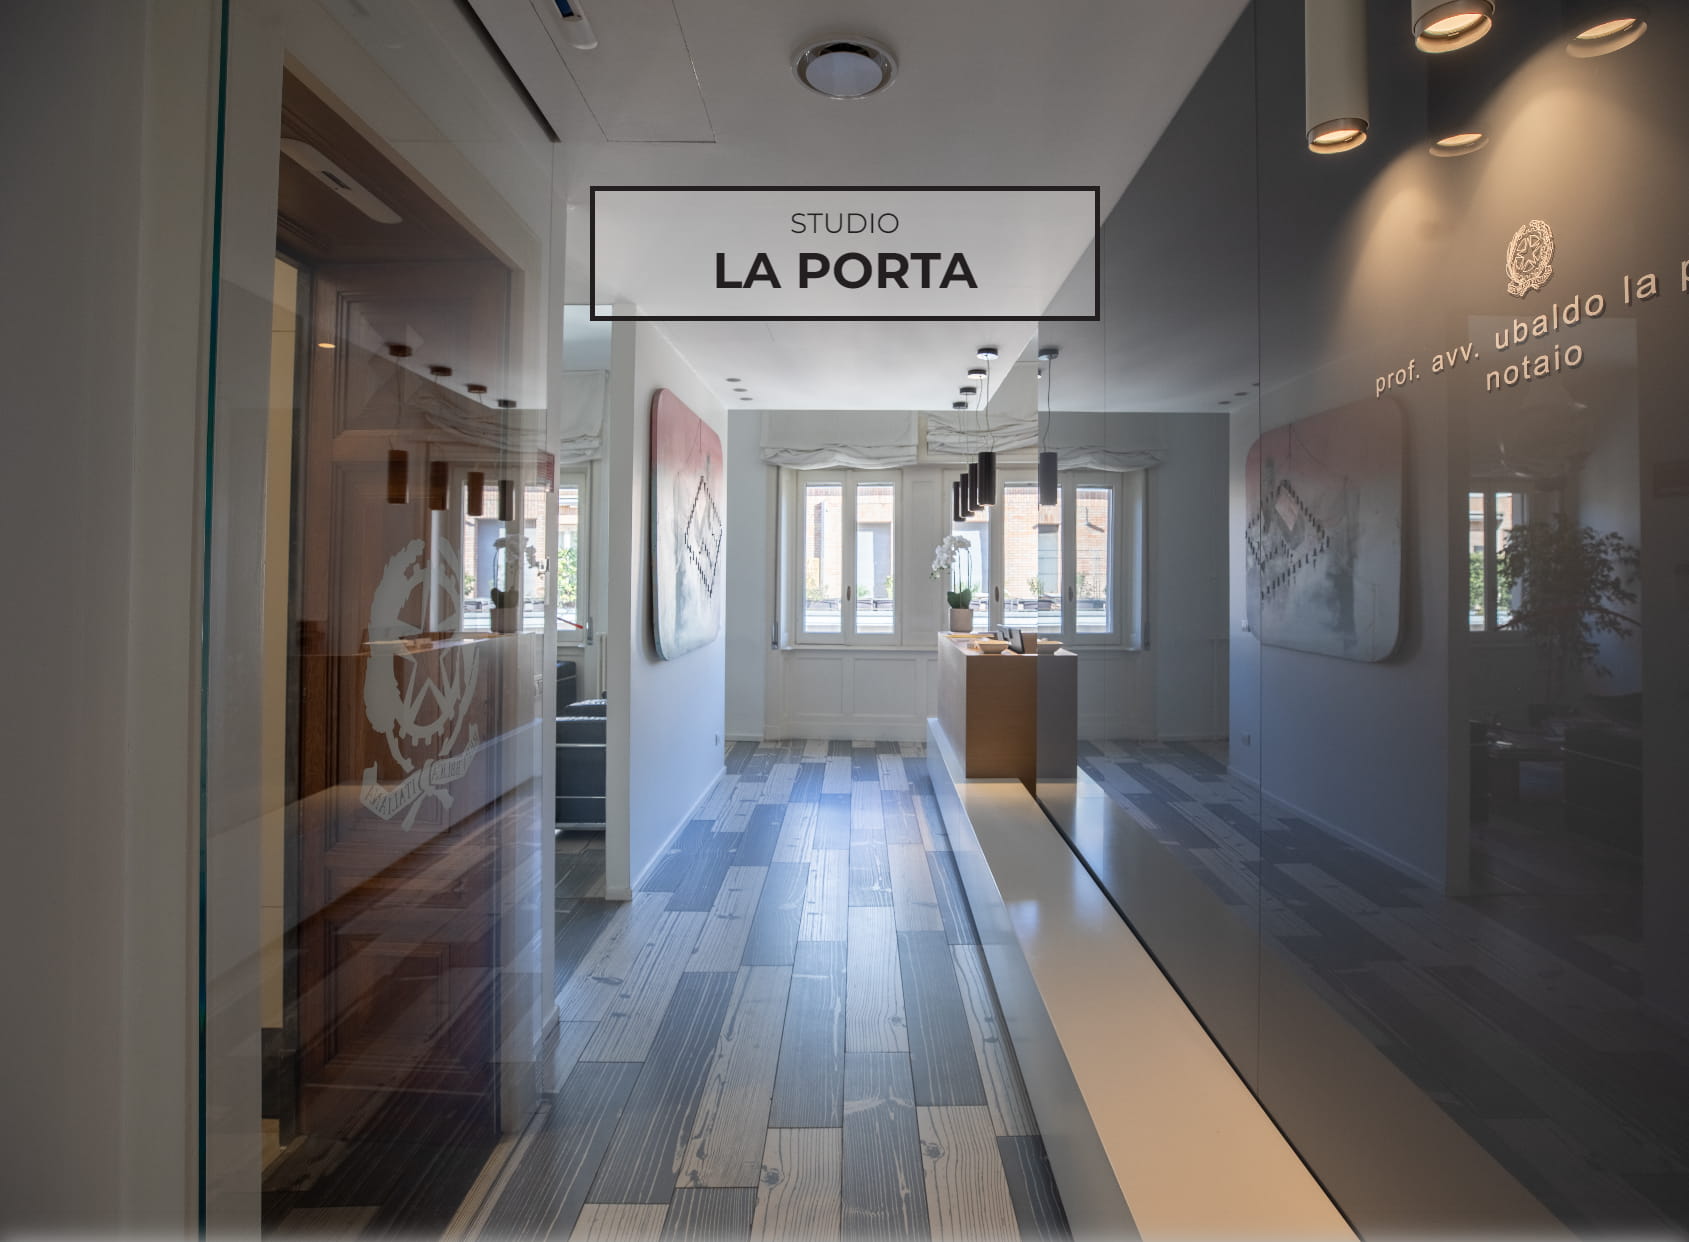 Studio La Porta - Notai Romano & Farinaro